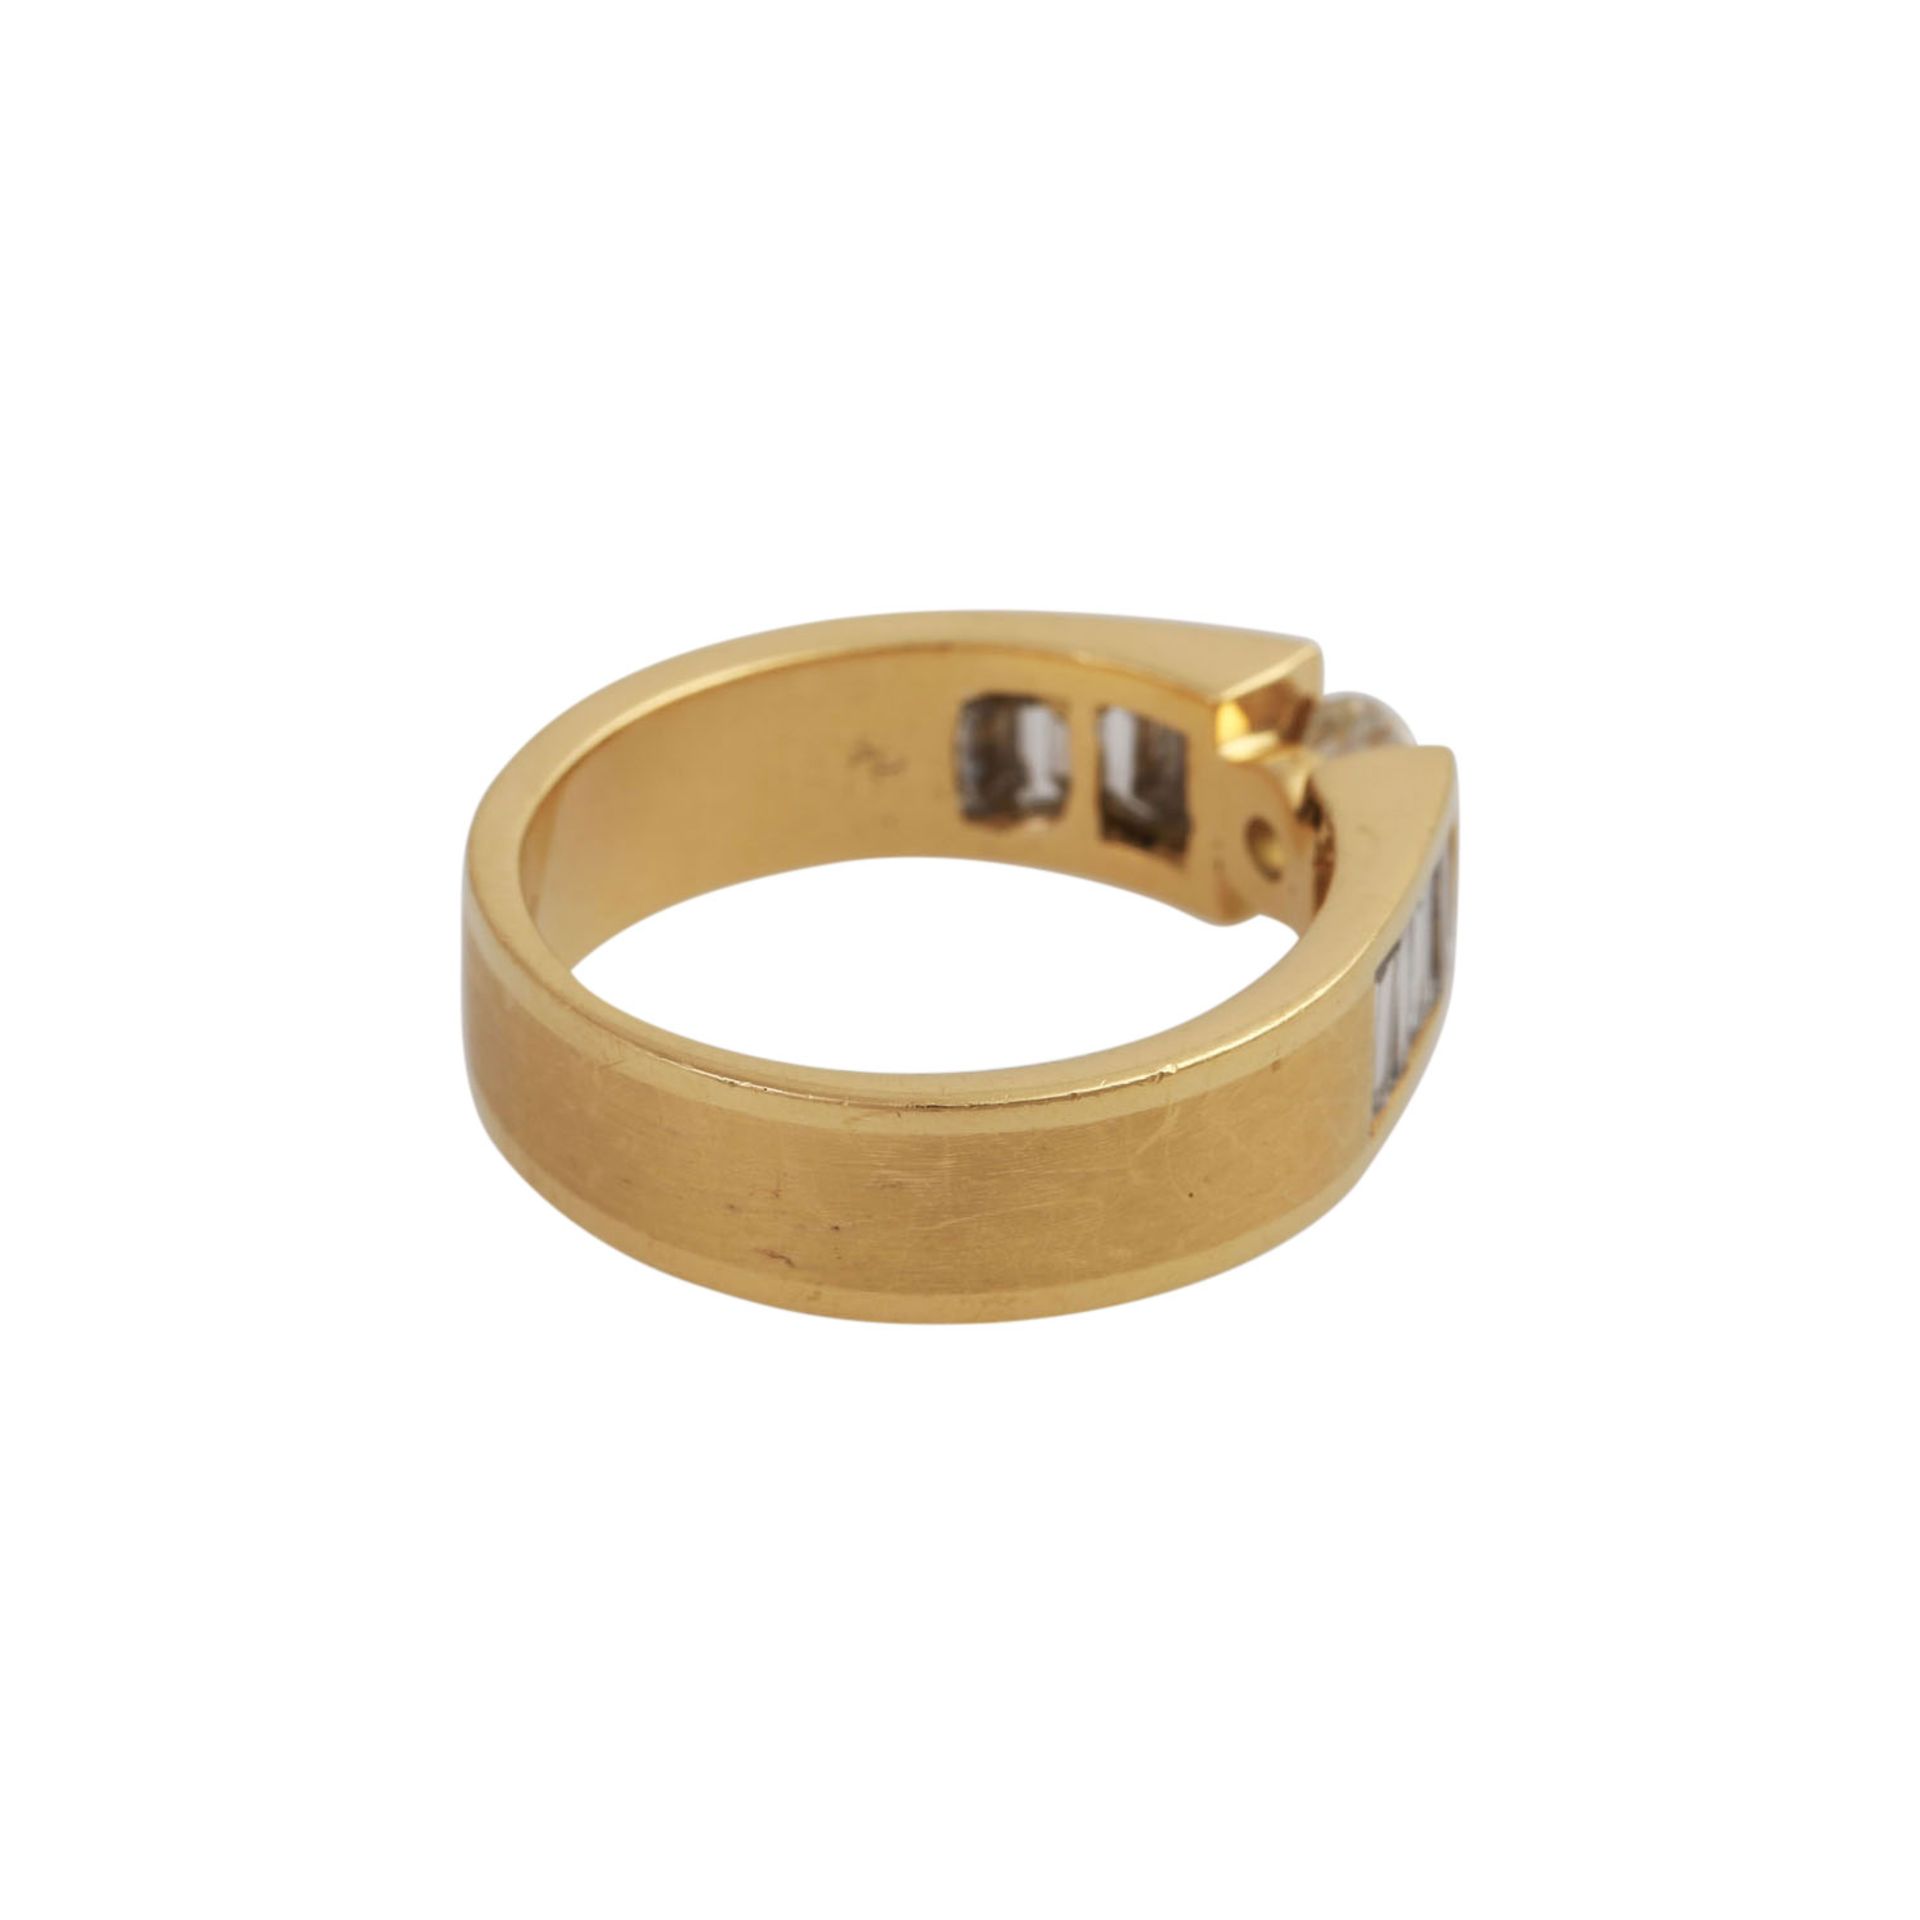 Ring mit Brillant, ca. 1 ct, LGW-GW (J-K)/P1flankiert von je 4 Diamanten im Baguetteschliff, zus. - Bild 3 aus 5